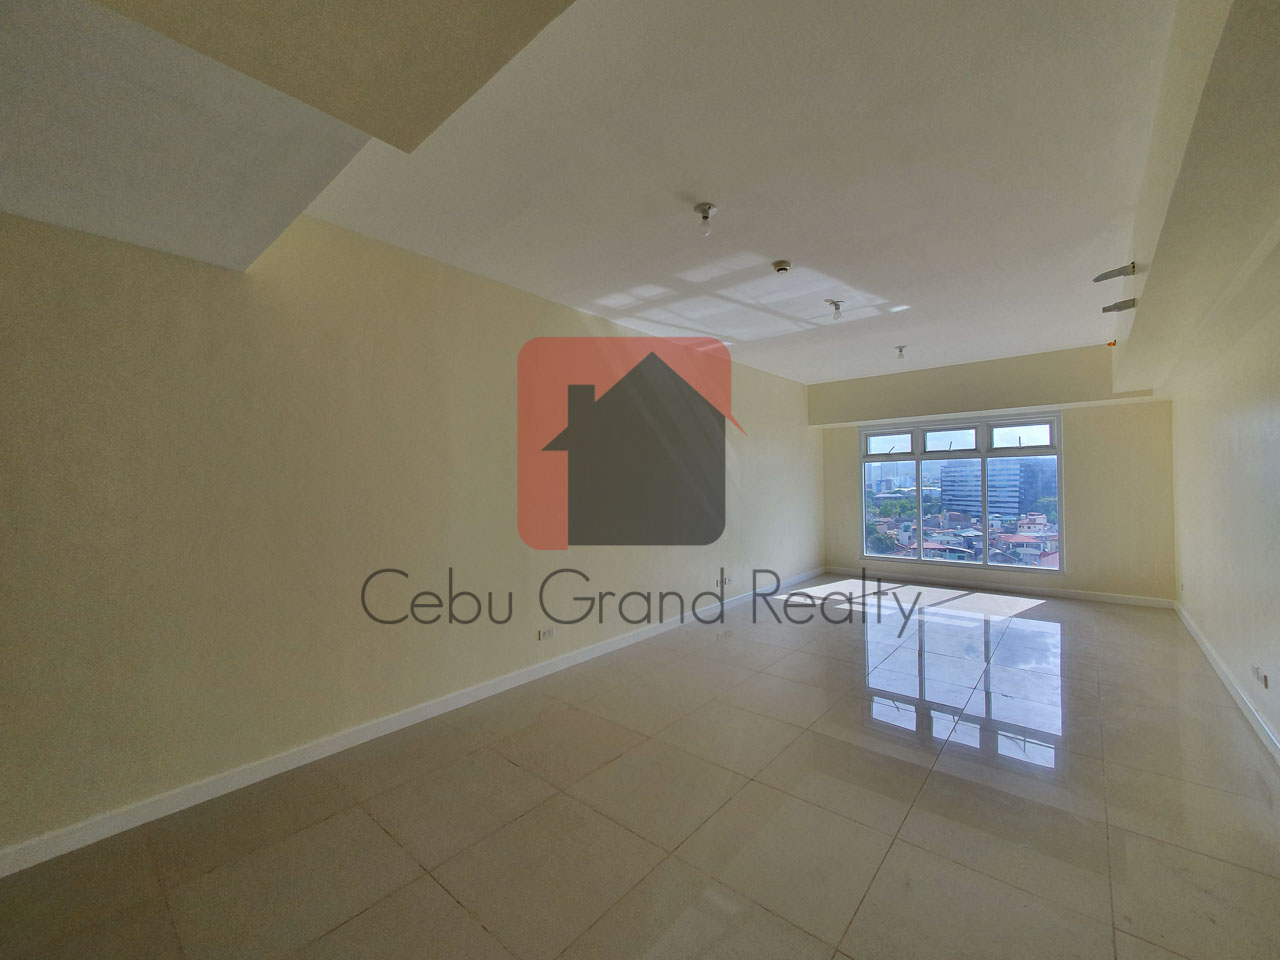 SRBSP2 2 Bedroom Condo for Sale in Cebu Business Park Cebu Grand Realty-2